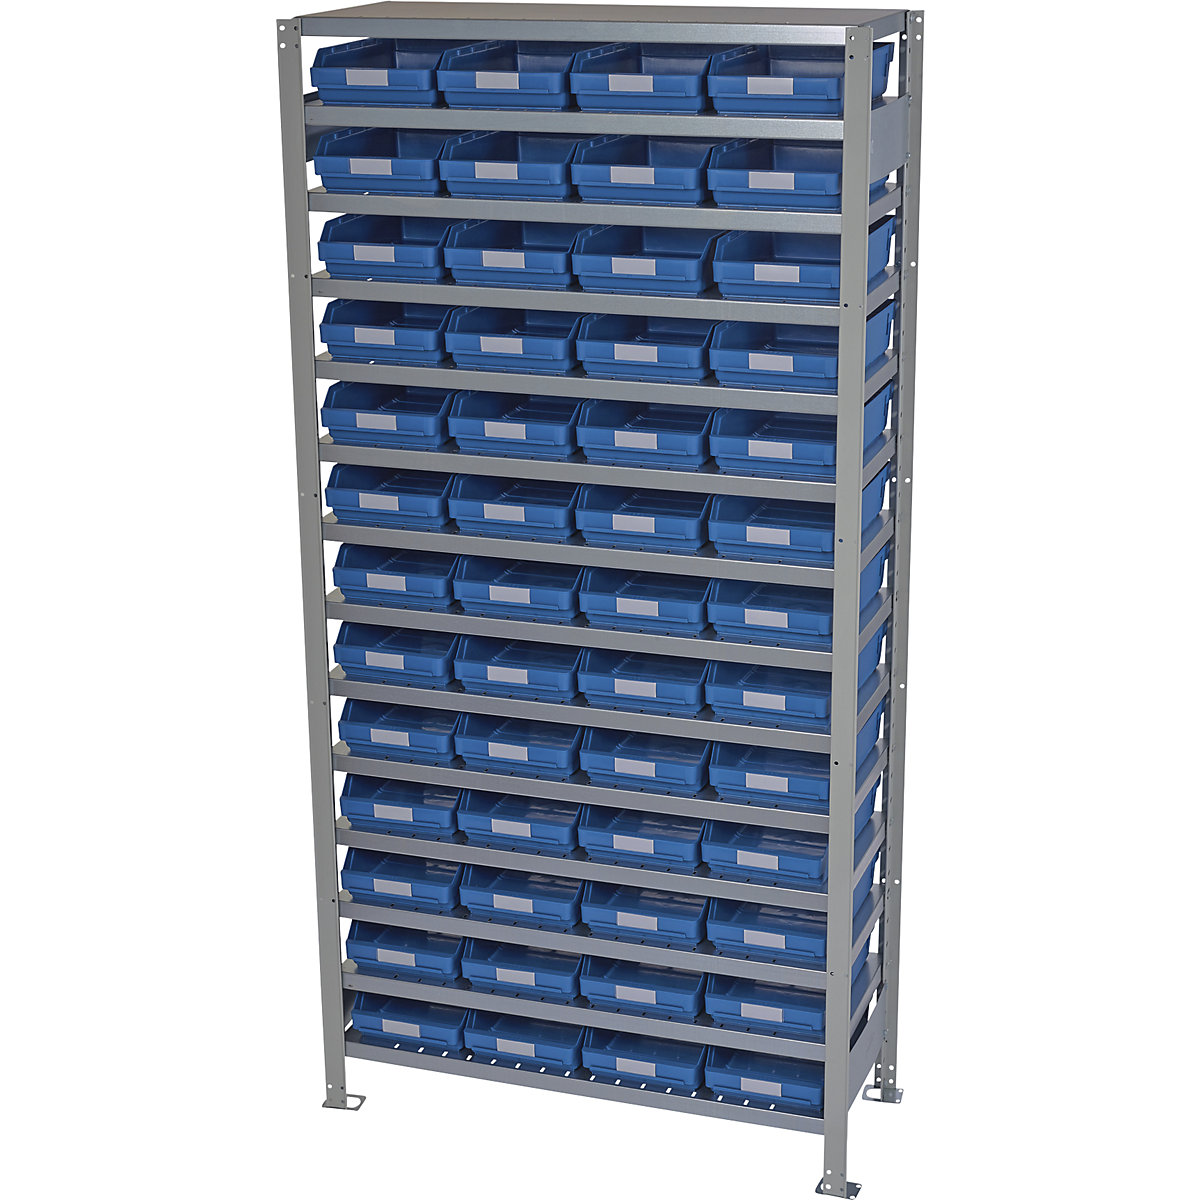 Összedugaszolós állvány dobozokkal – STEMO, állványmagasság 2100 mm, alapállvány, 300 mm mély, 52 kék doboz-23